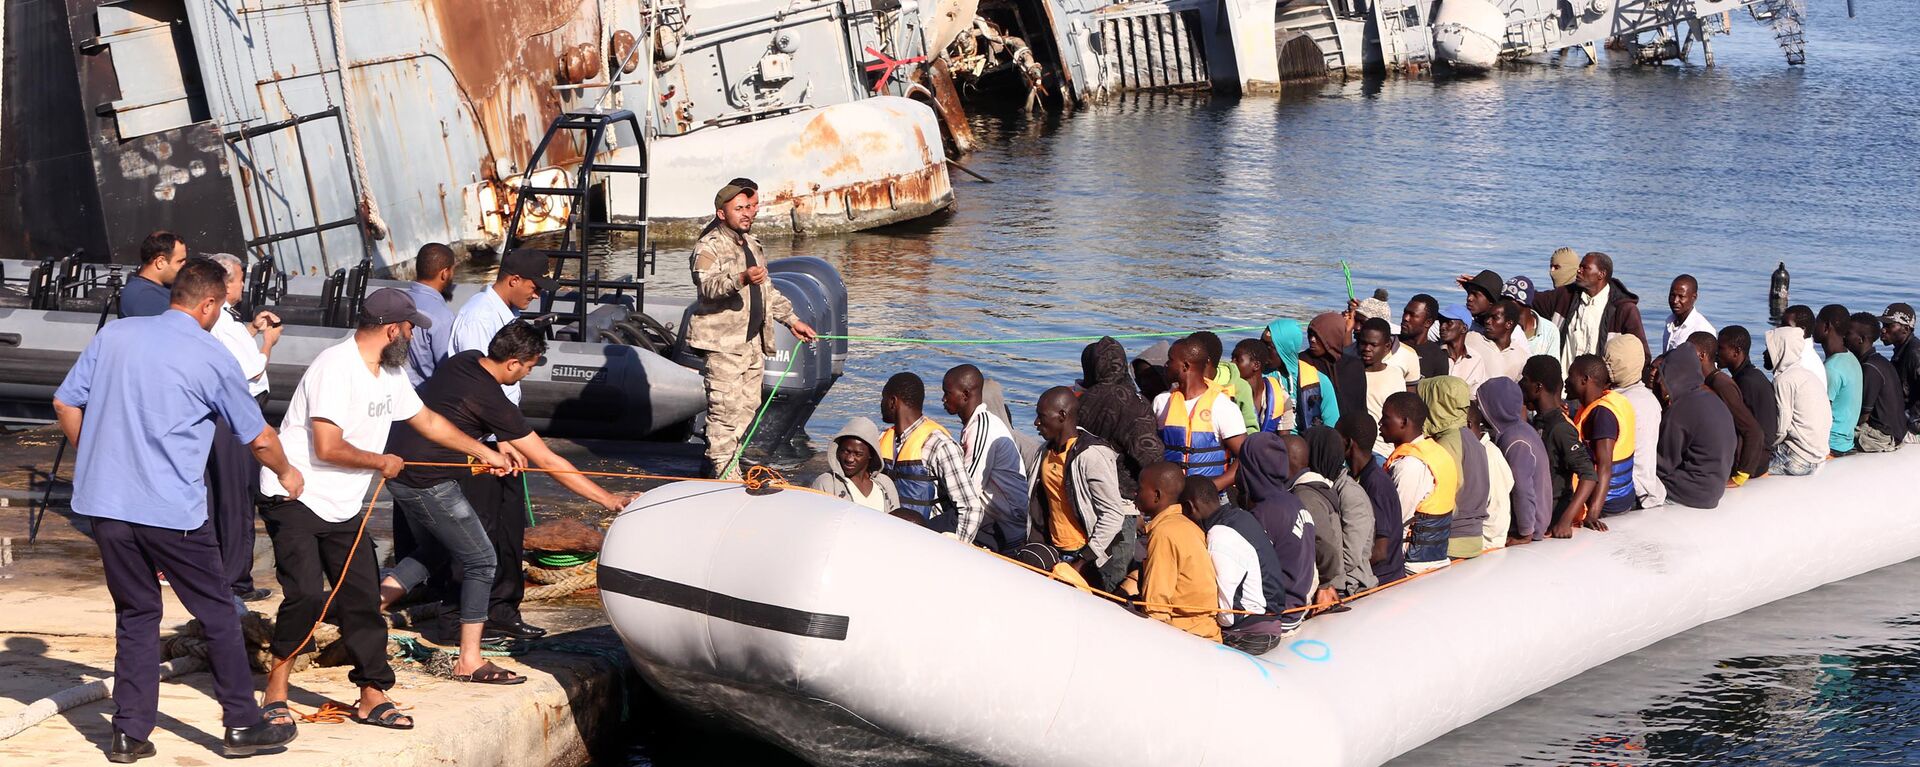  خفر السواحل الليبي يقوم بسحب قارب يحمل مهاجرين أفارقة، تم إنقاذهم أثناء محاولتهم الوصول إلى أوروبا بطريقة غير شرعية، في قاعدة بحرية بالقرب من العاصمة طرابلس في 29 سبتمبر/ أيلول 2015. - سبوتنيك عربي, 1920, 12.06.2021